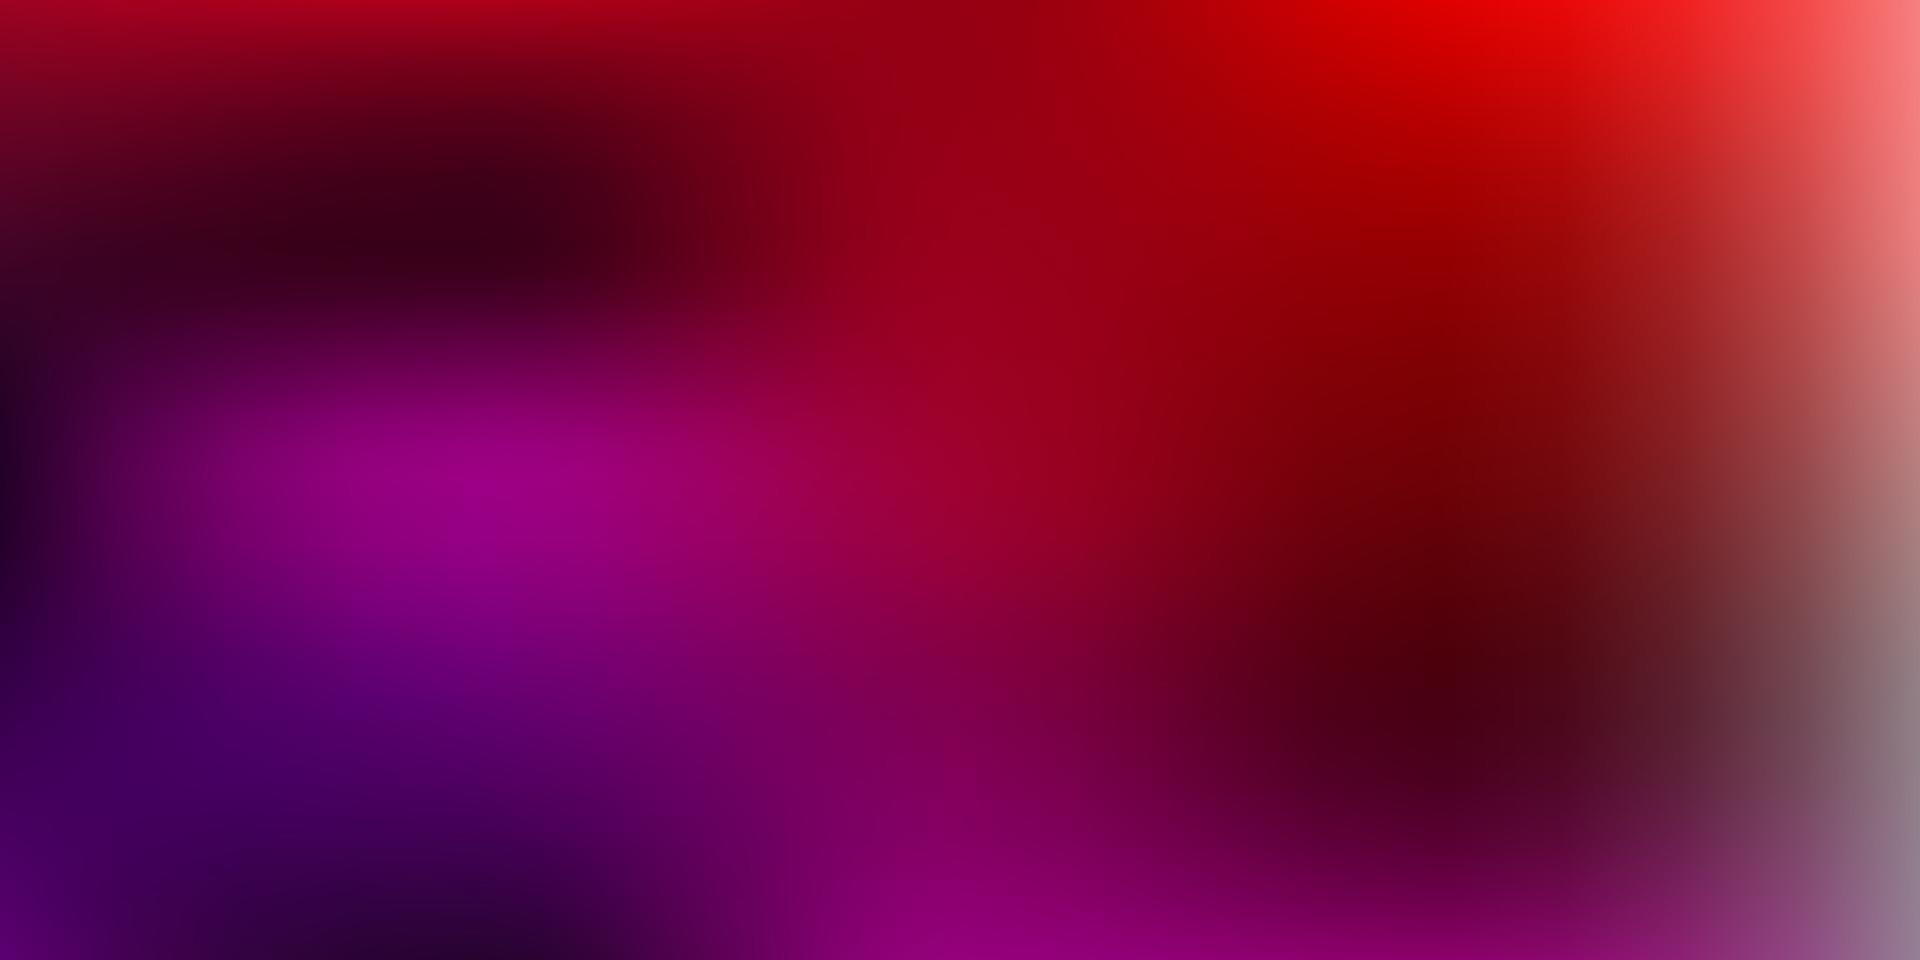 Plantilla de desenfoque abstracto de vector rosa claro, rojo.